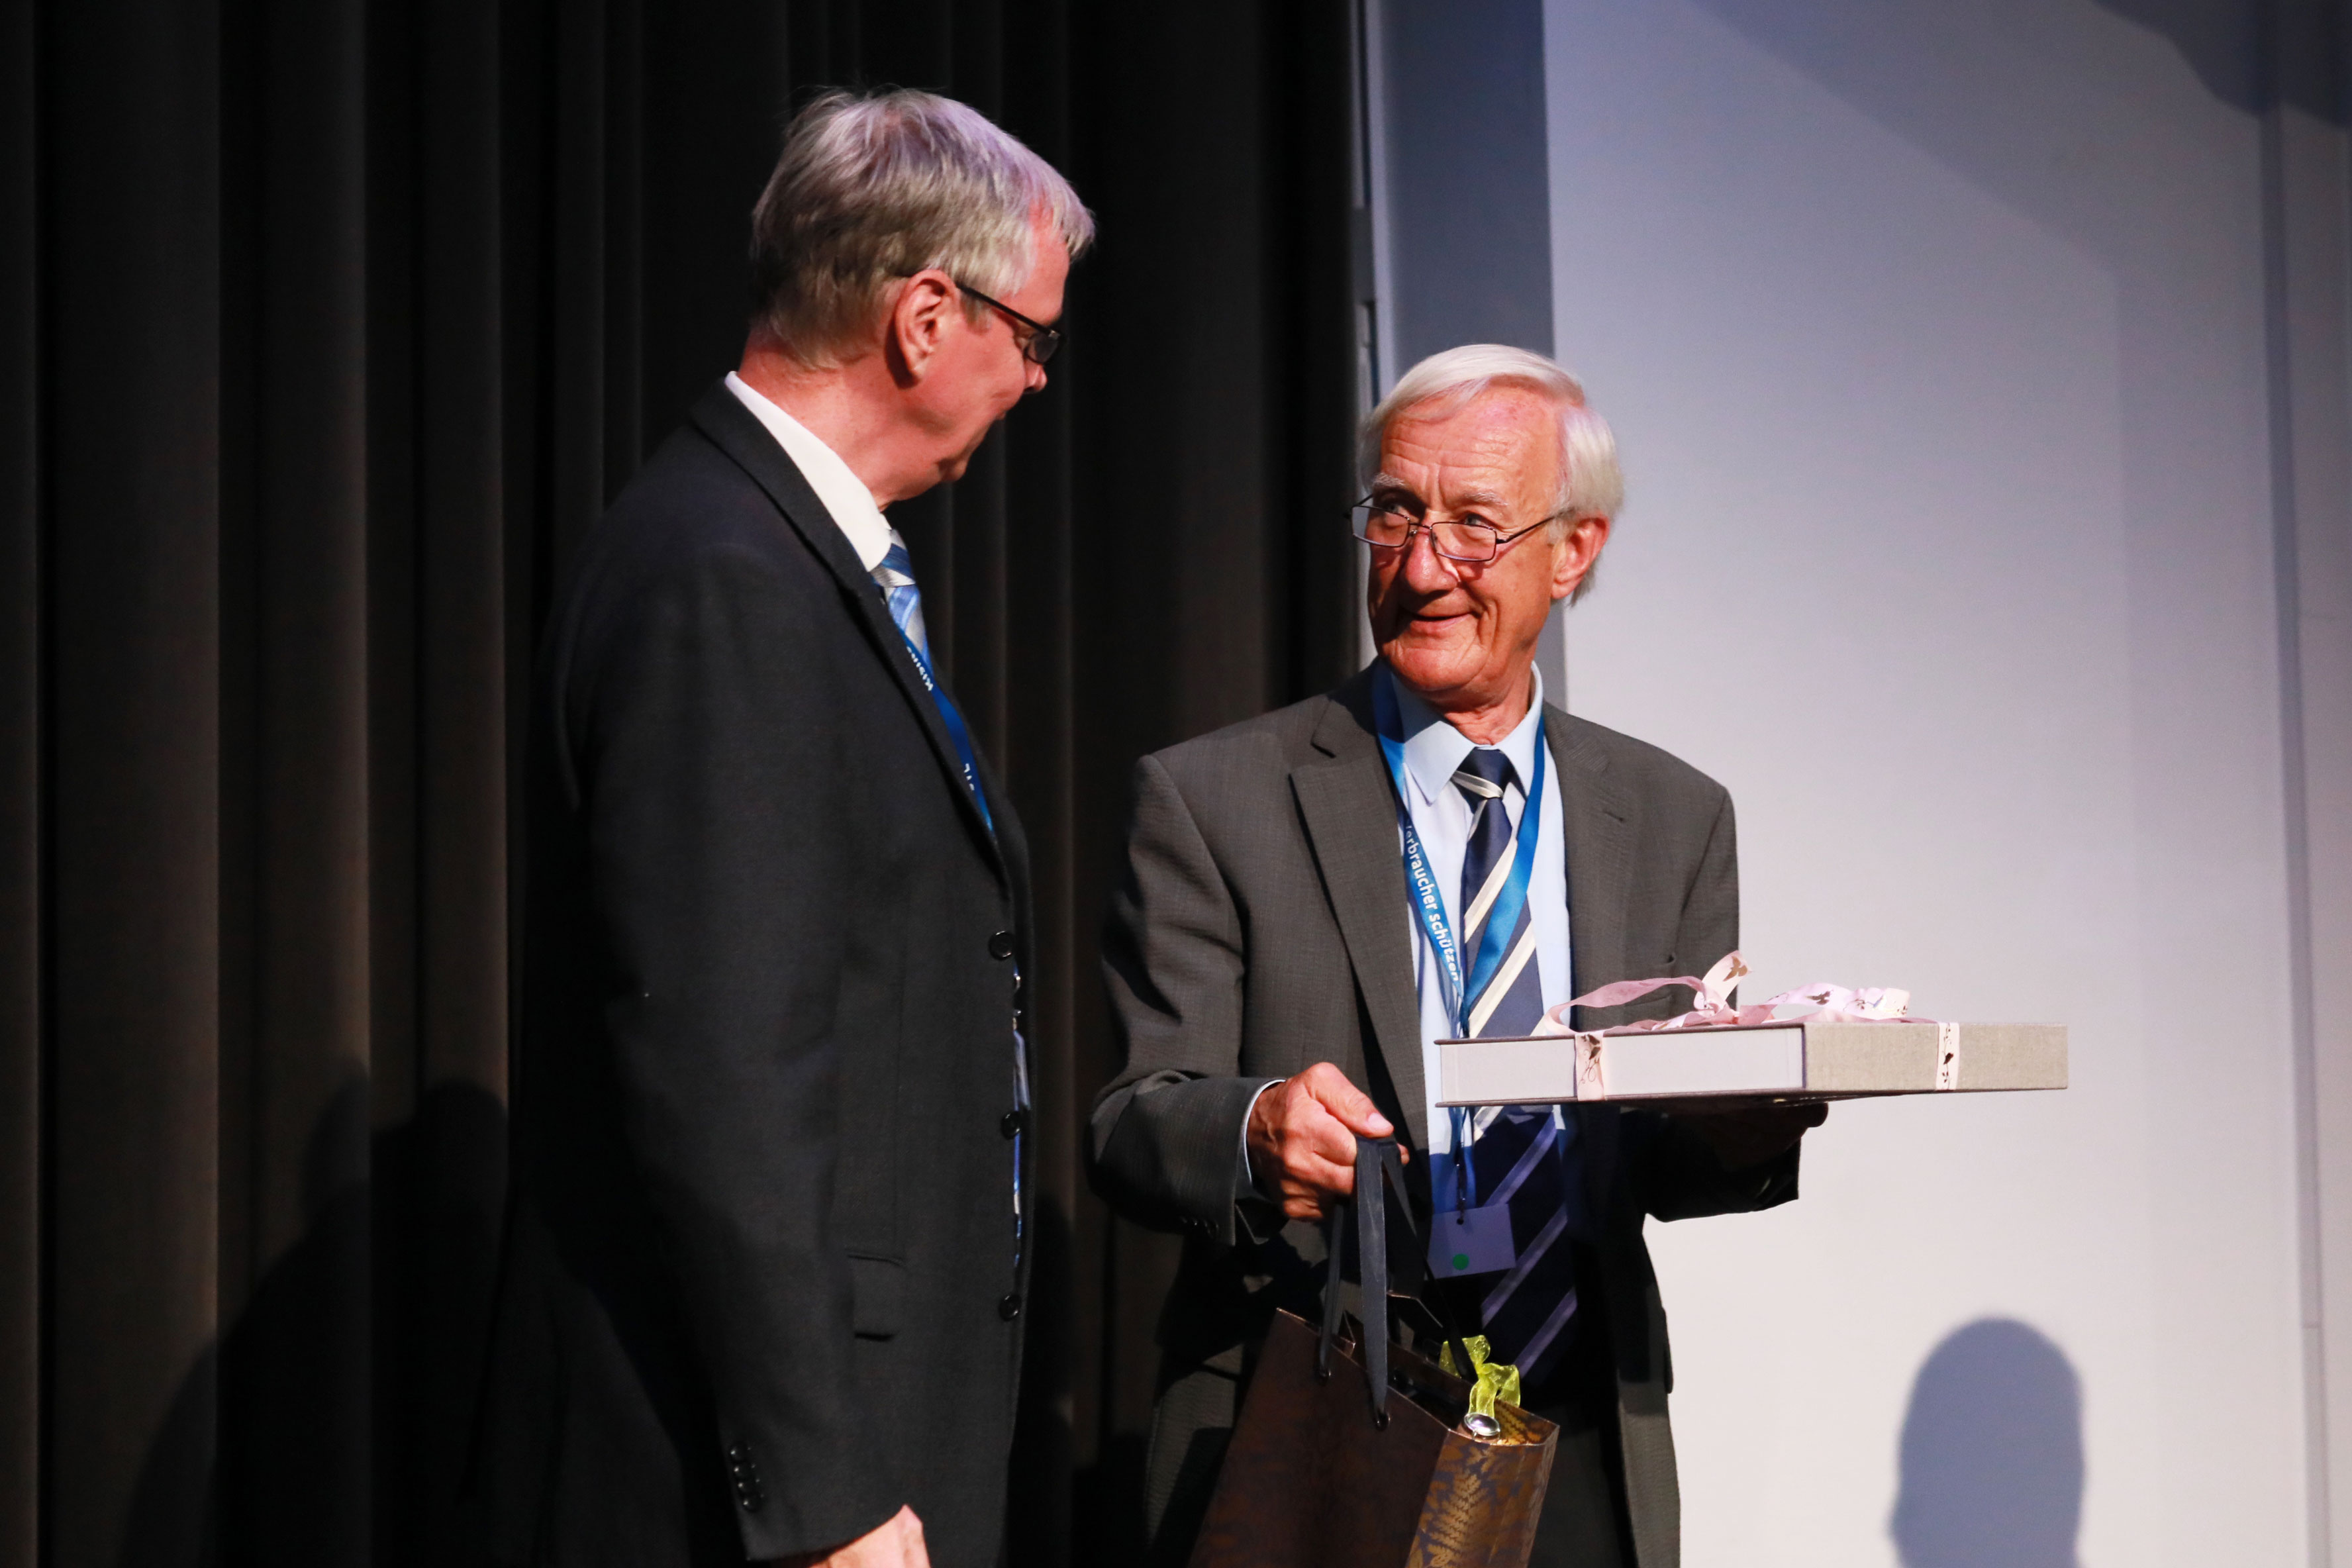 Der Vorsitzende der ZKBS, Herr Prof. Dr. Dr. Vahlenkamp ehrt das langjährige ZKBS-Mitglied Prof. Dr. Wilfried Wackernagel.